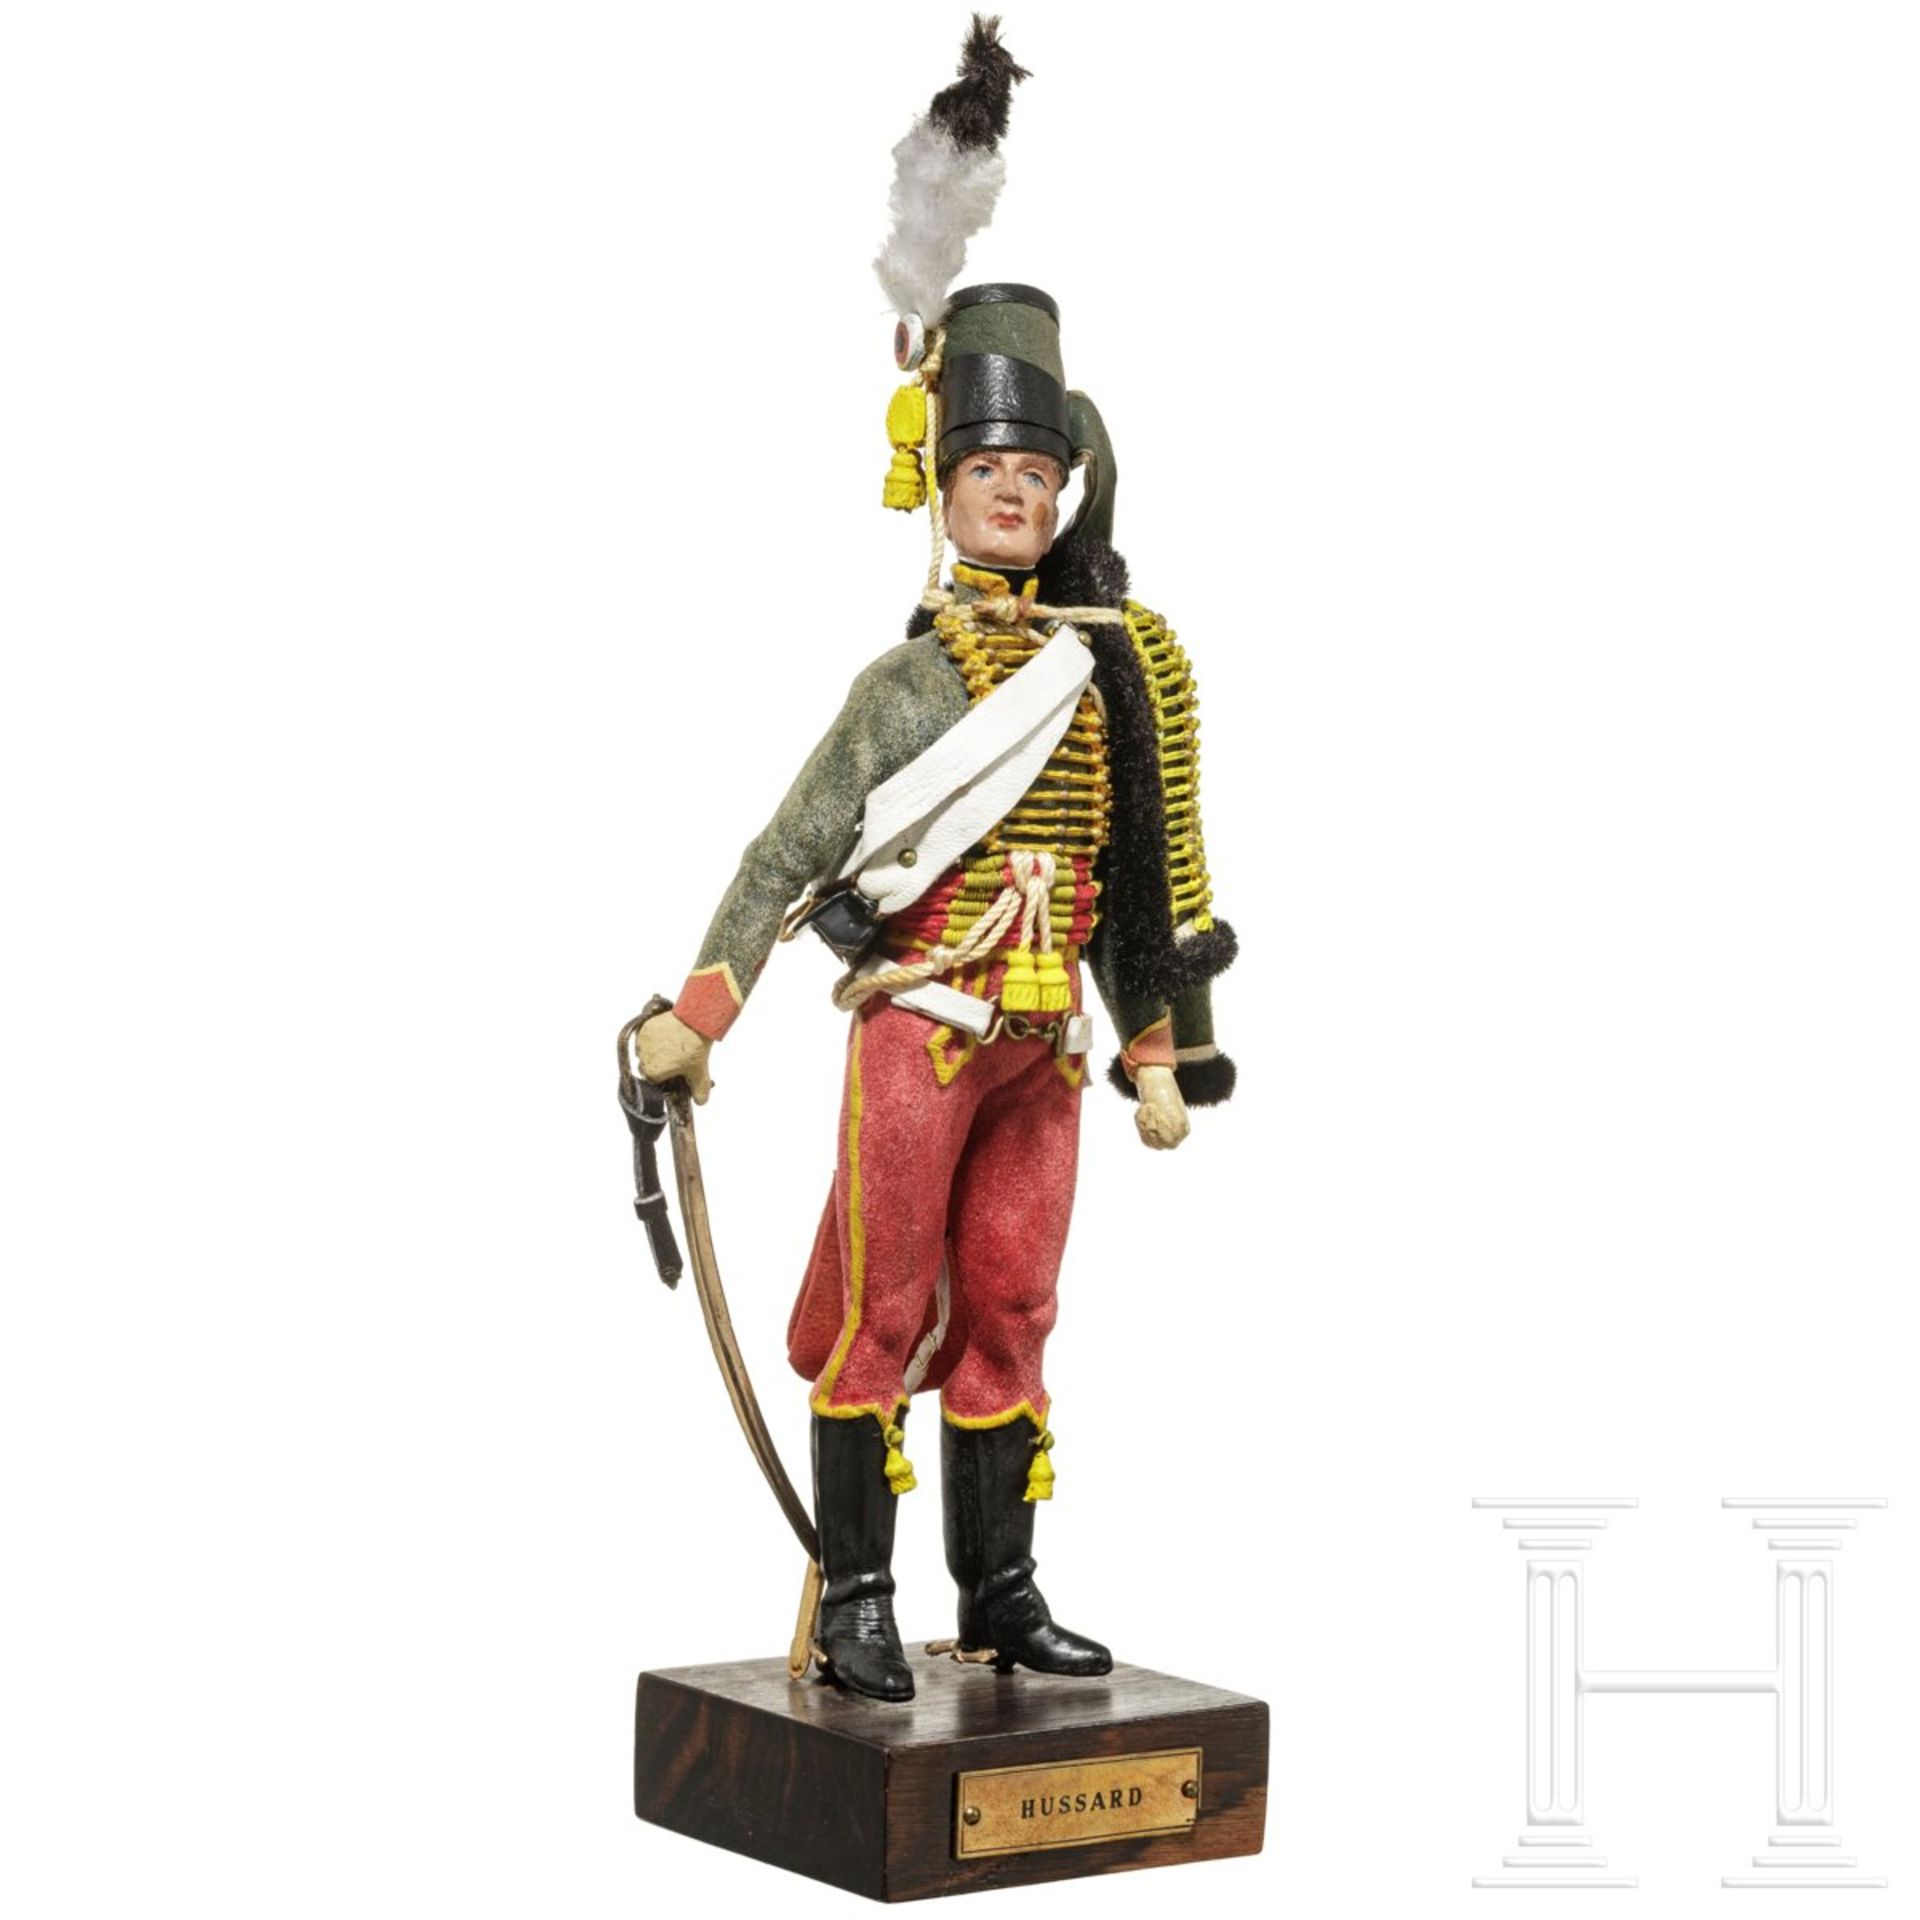 Husar um 1790 - Uniformfigur von Marcel Riffet, 20. Jhdt. - Bild 2 aus 6